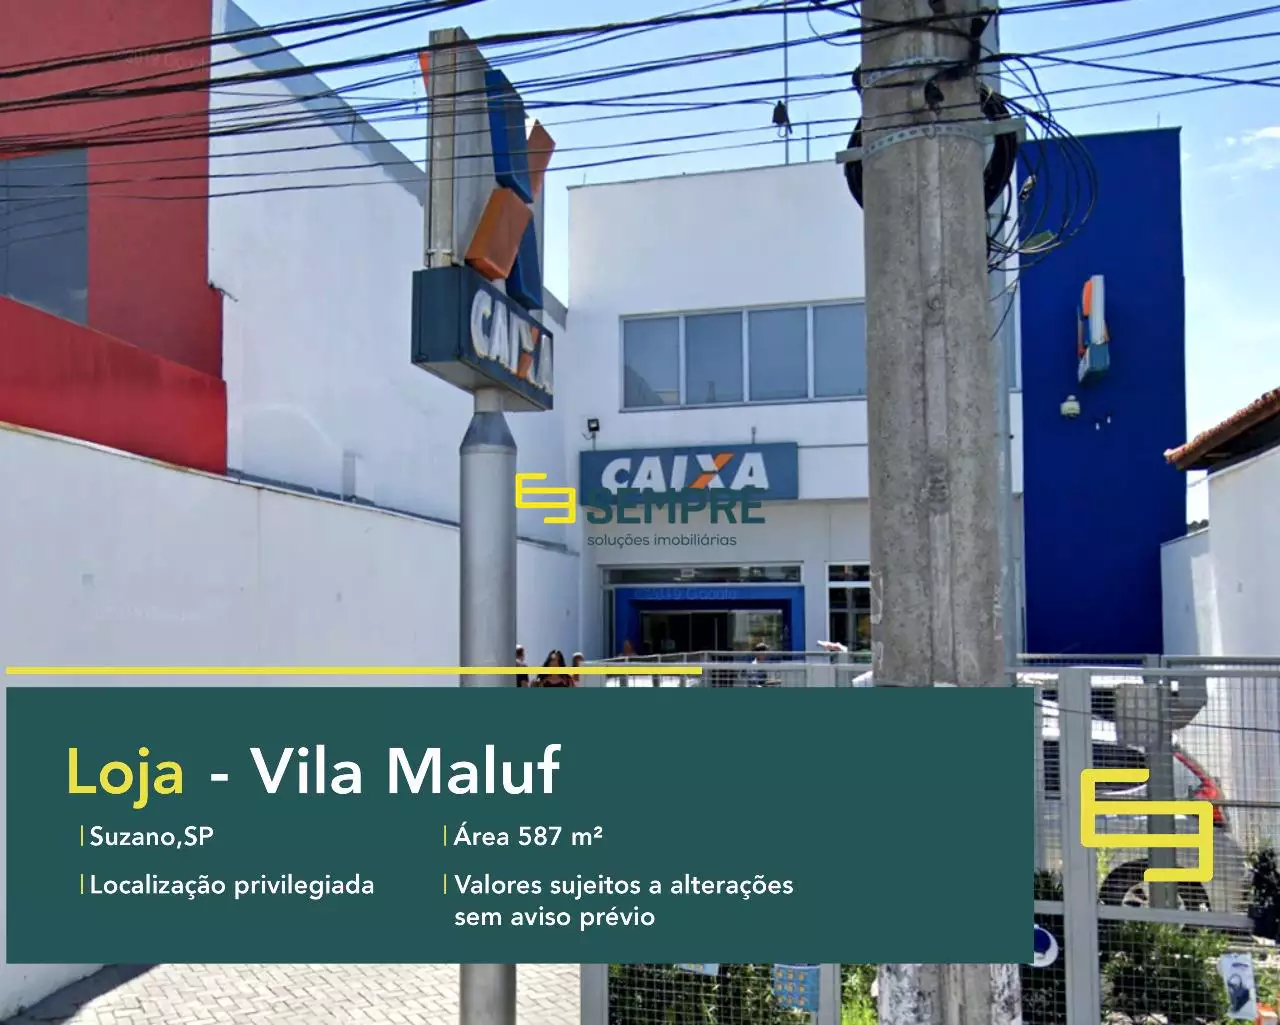 Loja para alugar na Vila Maluf em São Paulo, em excelente localização. O estabelecimento comercial conta com área de 587,77 m².